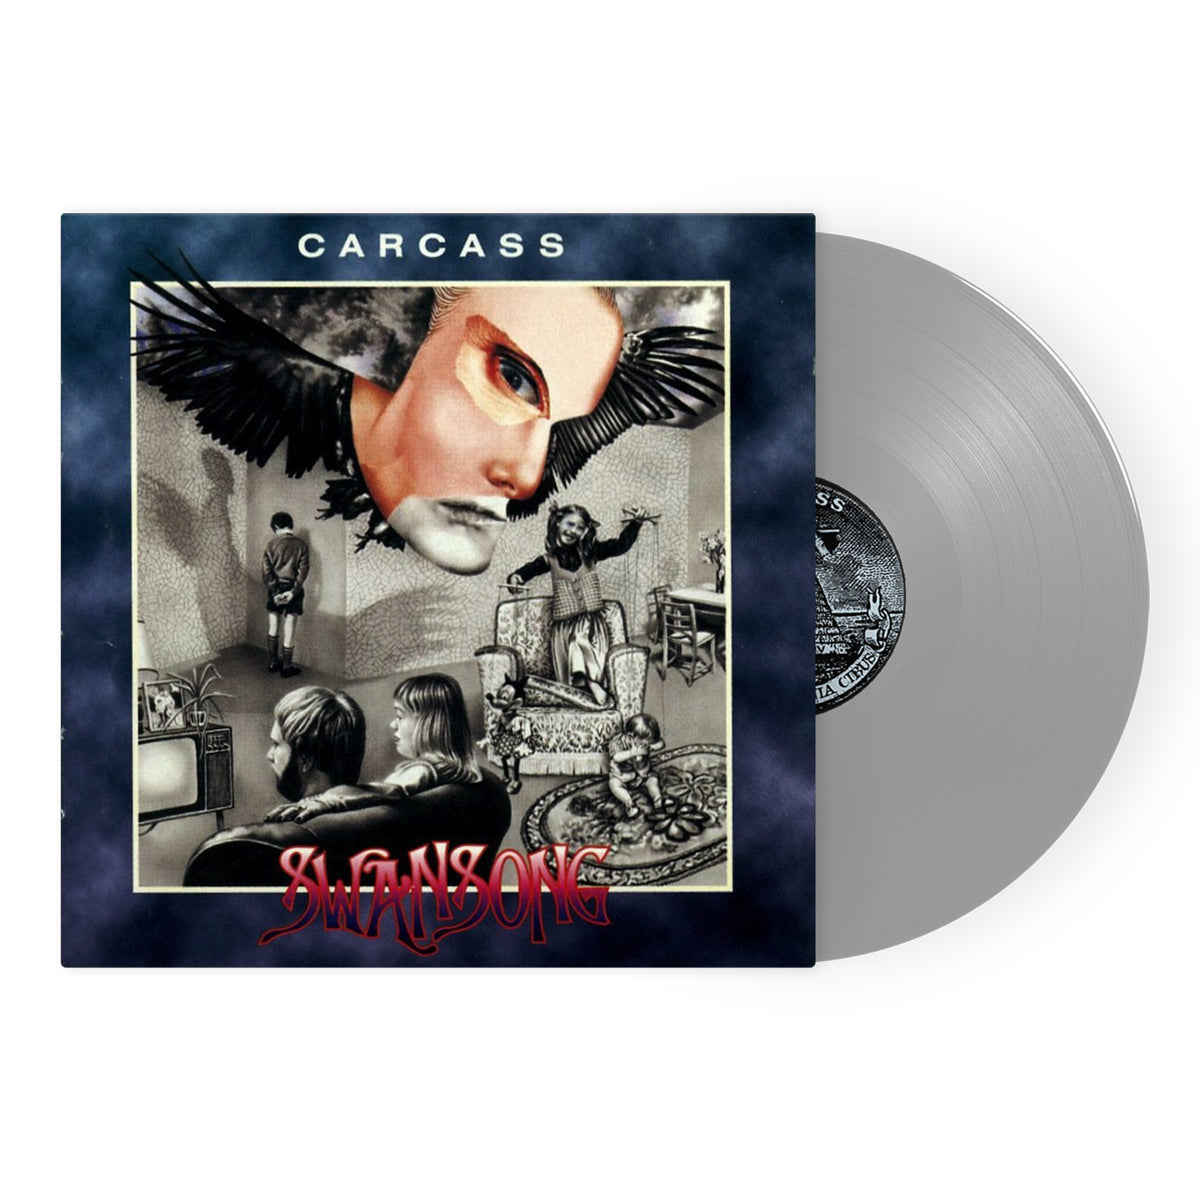 Carcass "Swansong MMXX" FDR Silver Vinyl